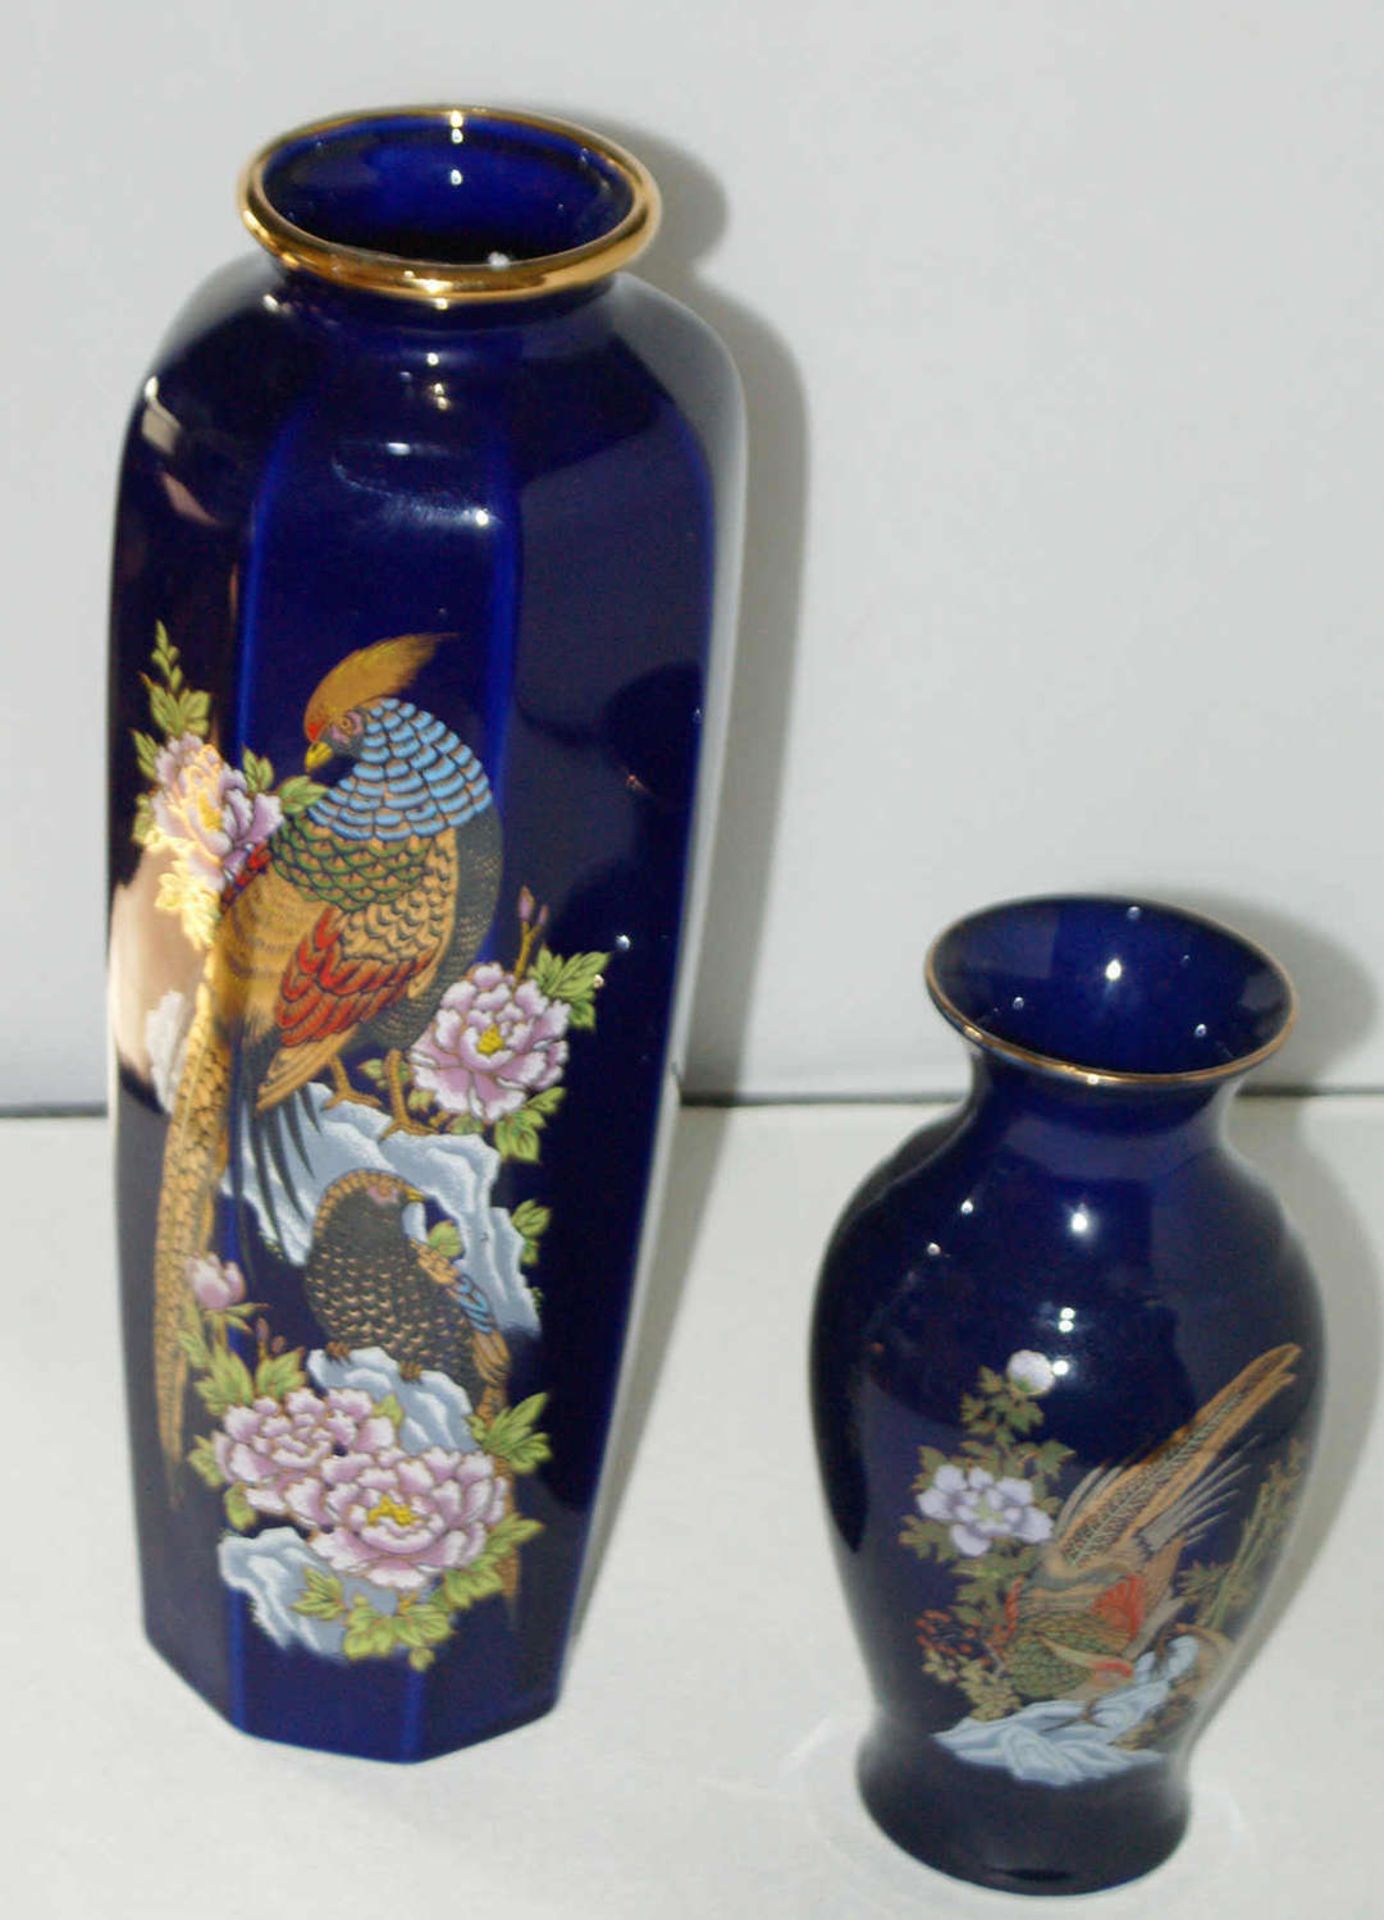 2 Porzellanvasen, kobaltblau, mit Vogel Motiven, reichhaltig dekoriert. Große Vase: Höhe ca. 27,5